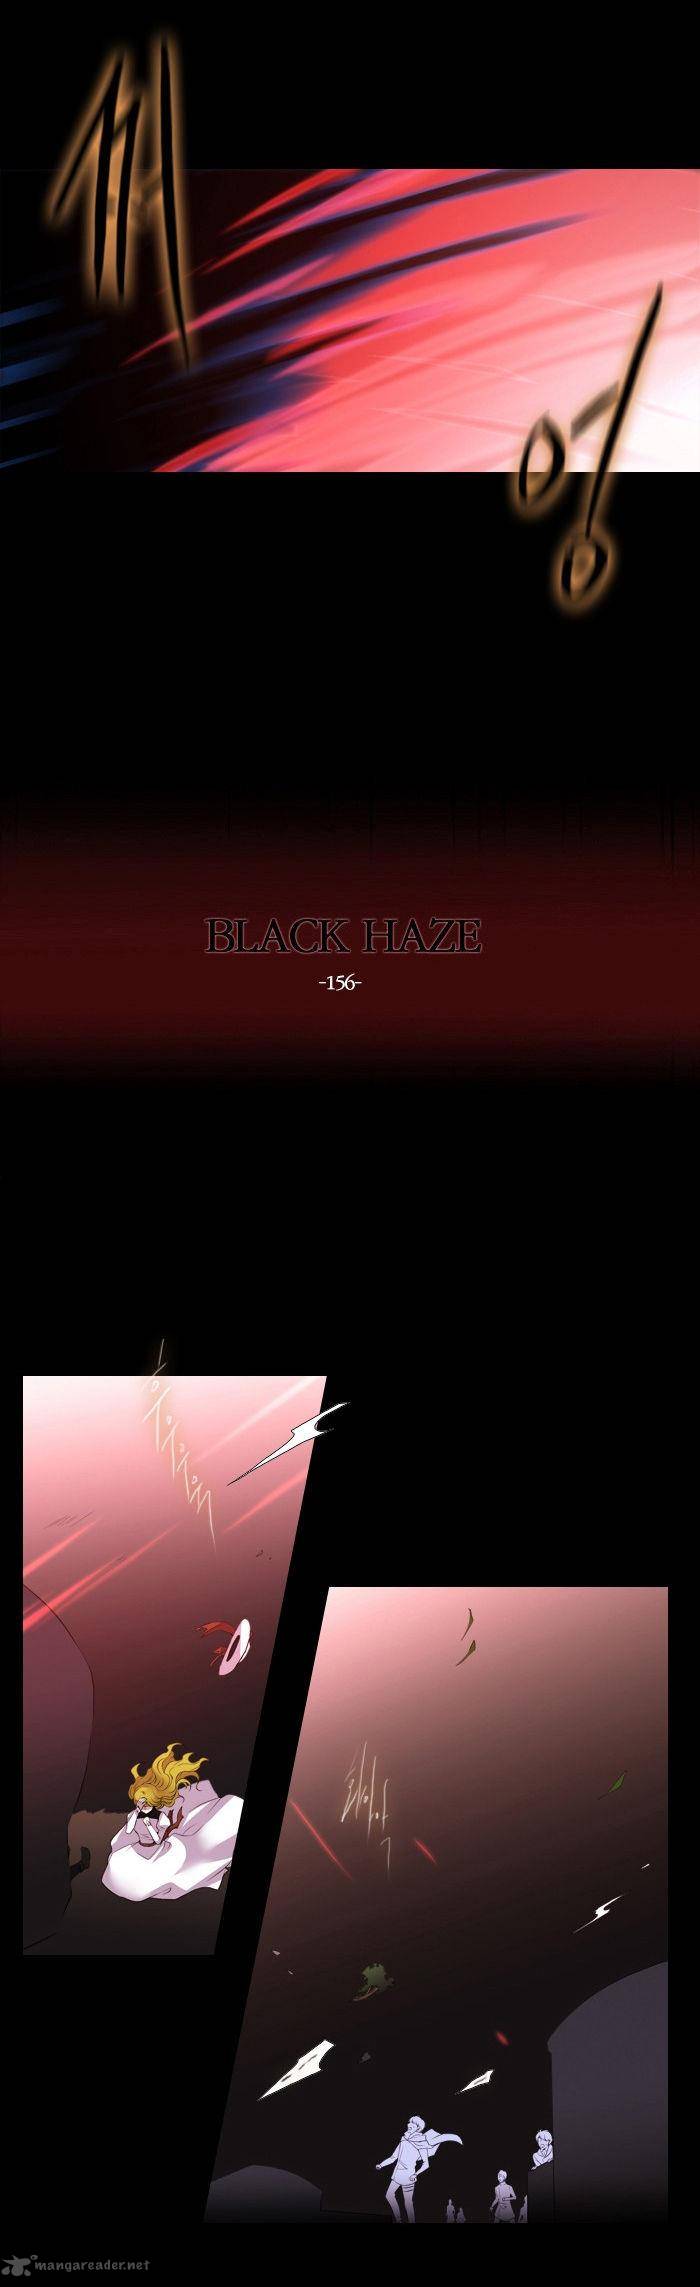 Black Haze 156 7